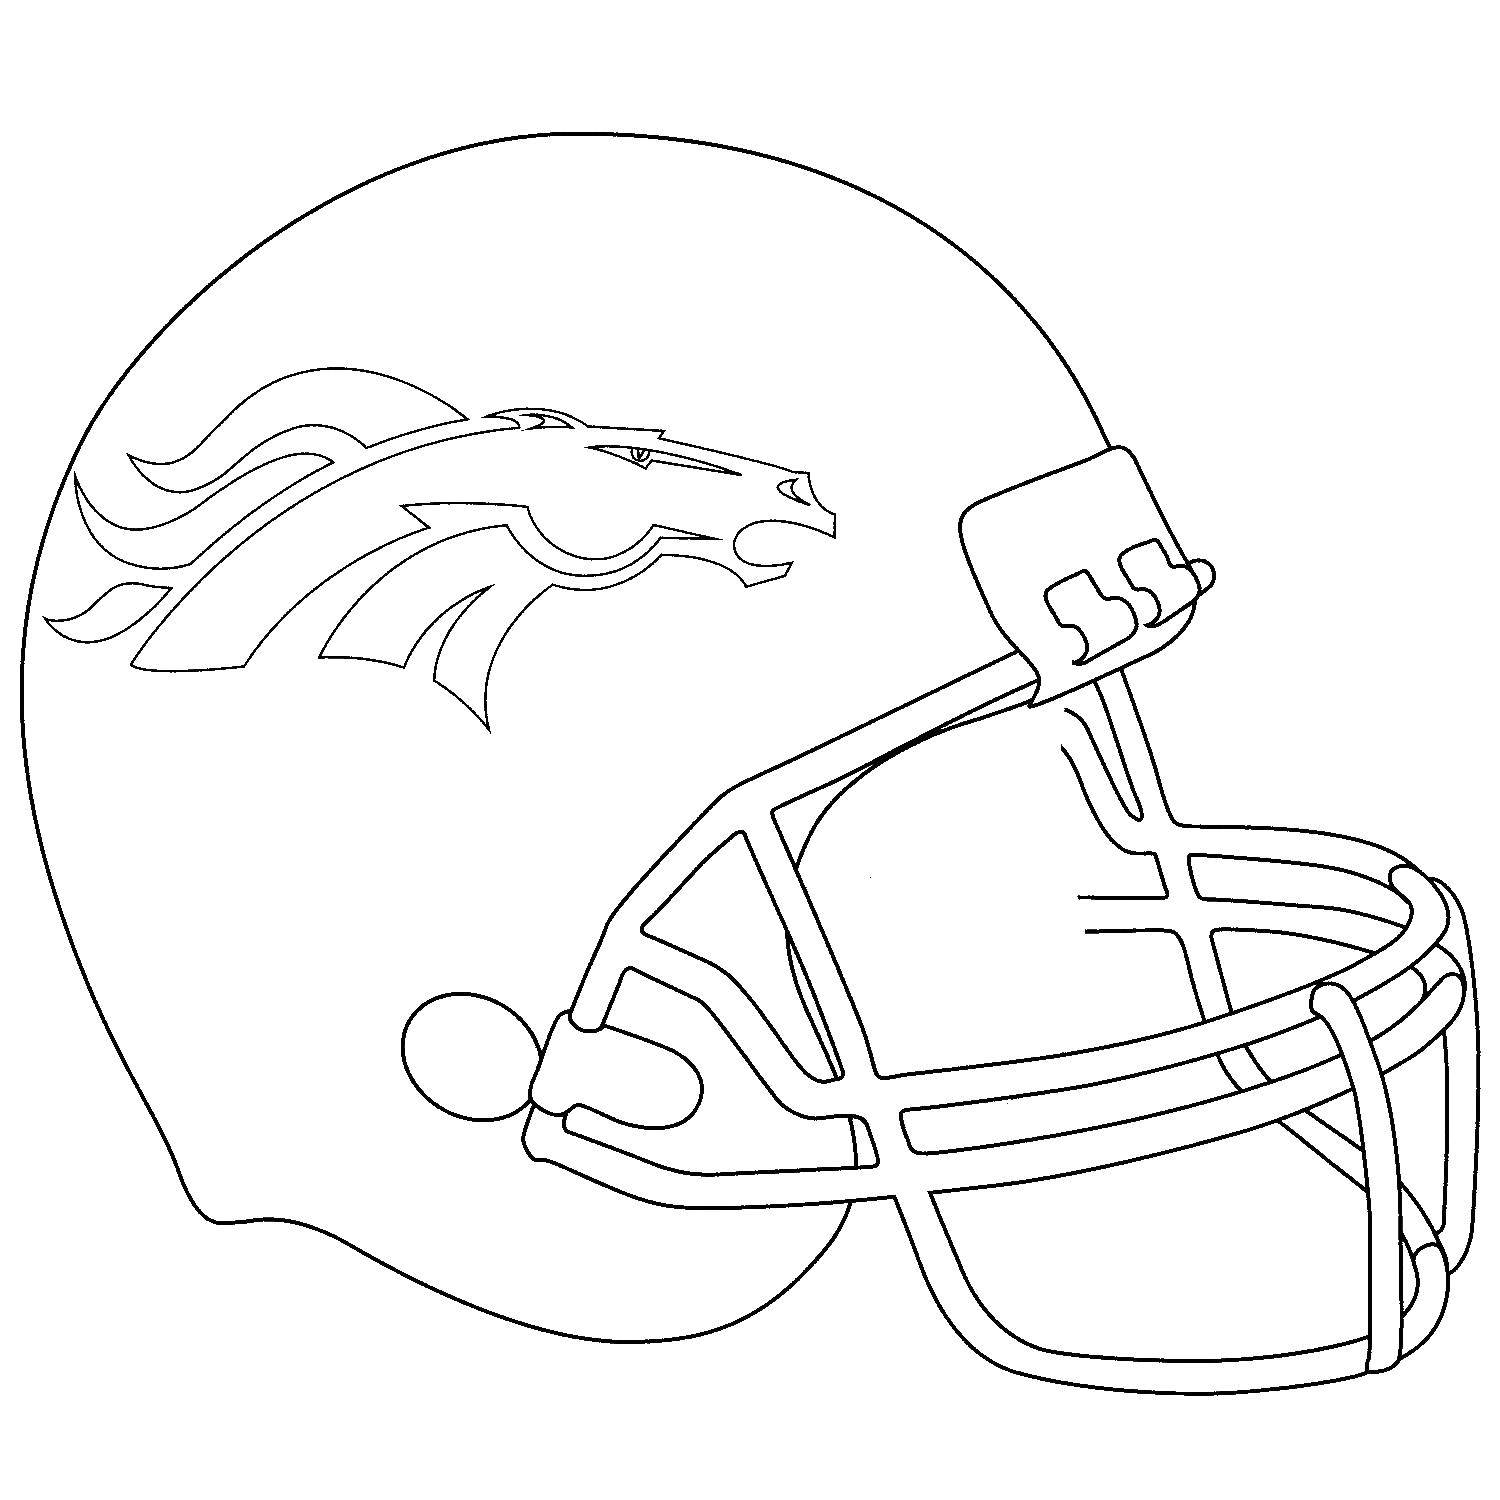 Название: Раскраска Шлем. Категория: спорт. Теги: Спорт, шлем.